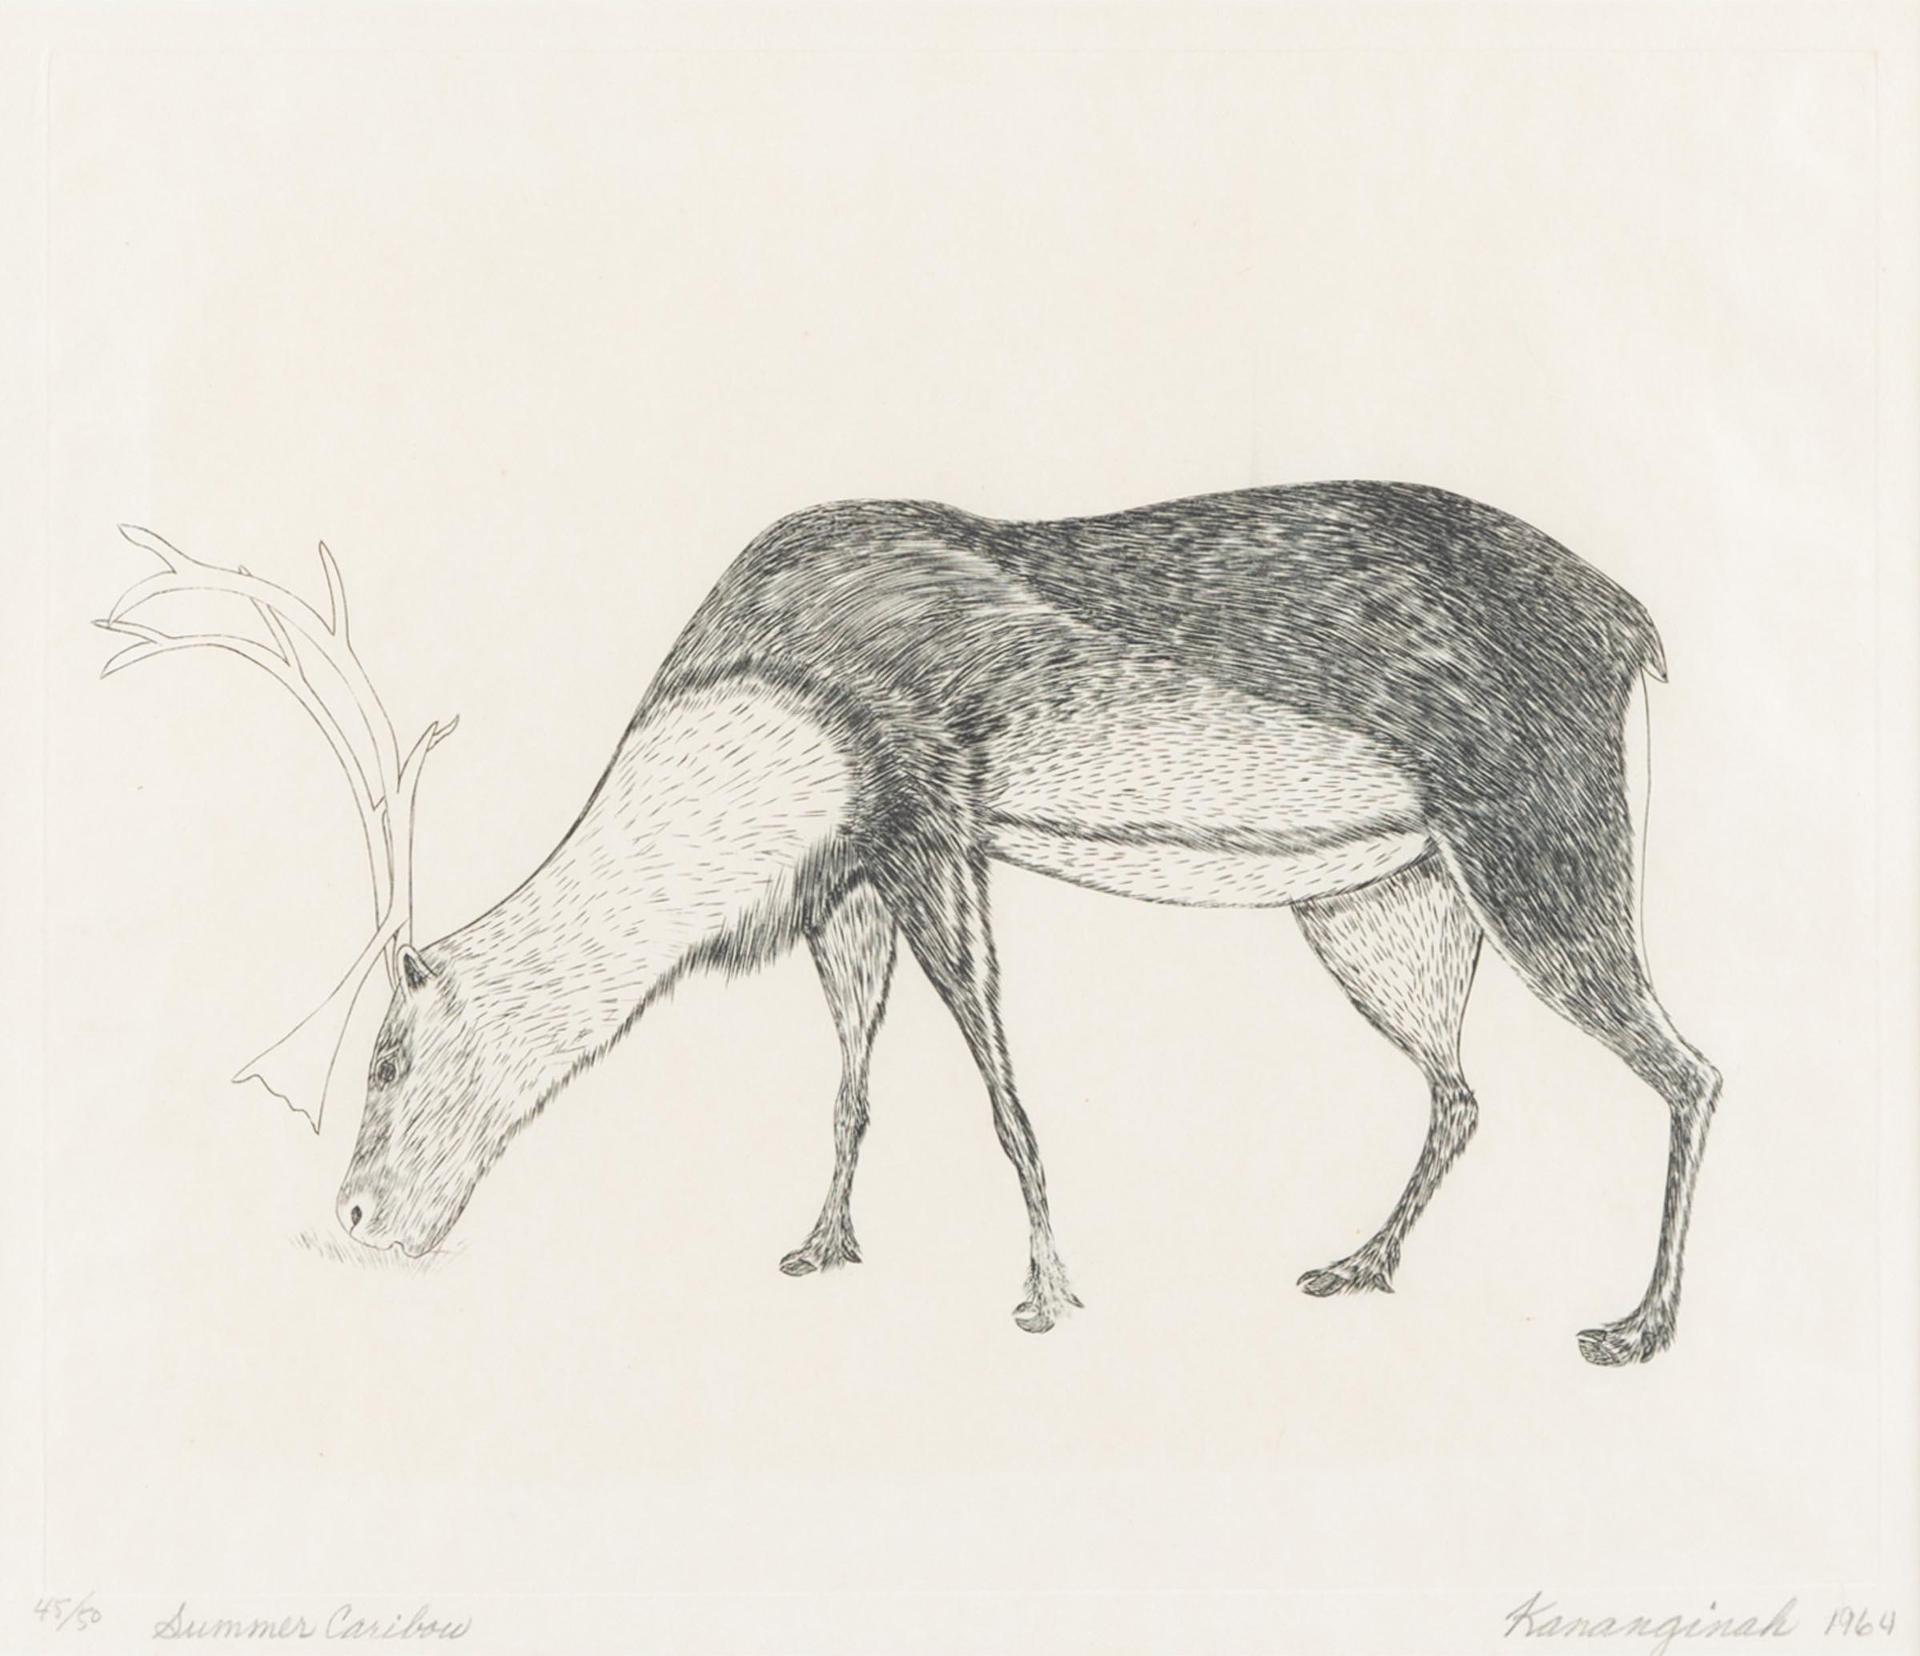 Kananginak Pootoogook (1935-2010) - Summer Caribou, 1964